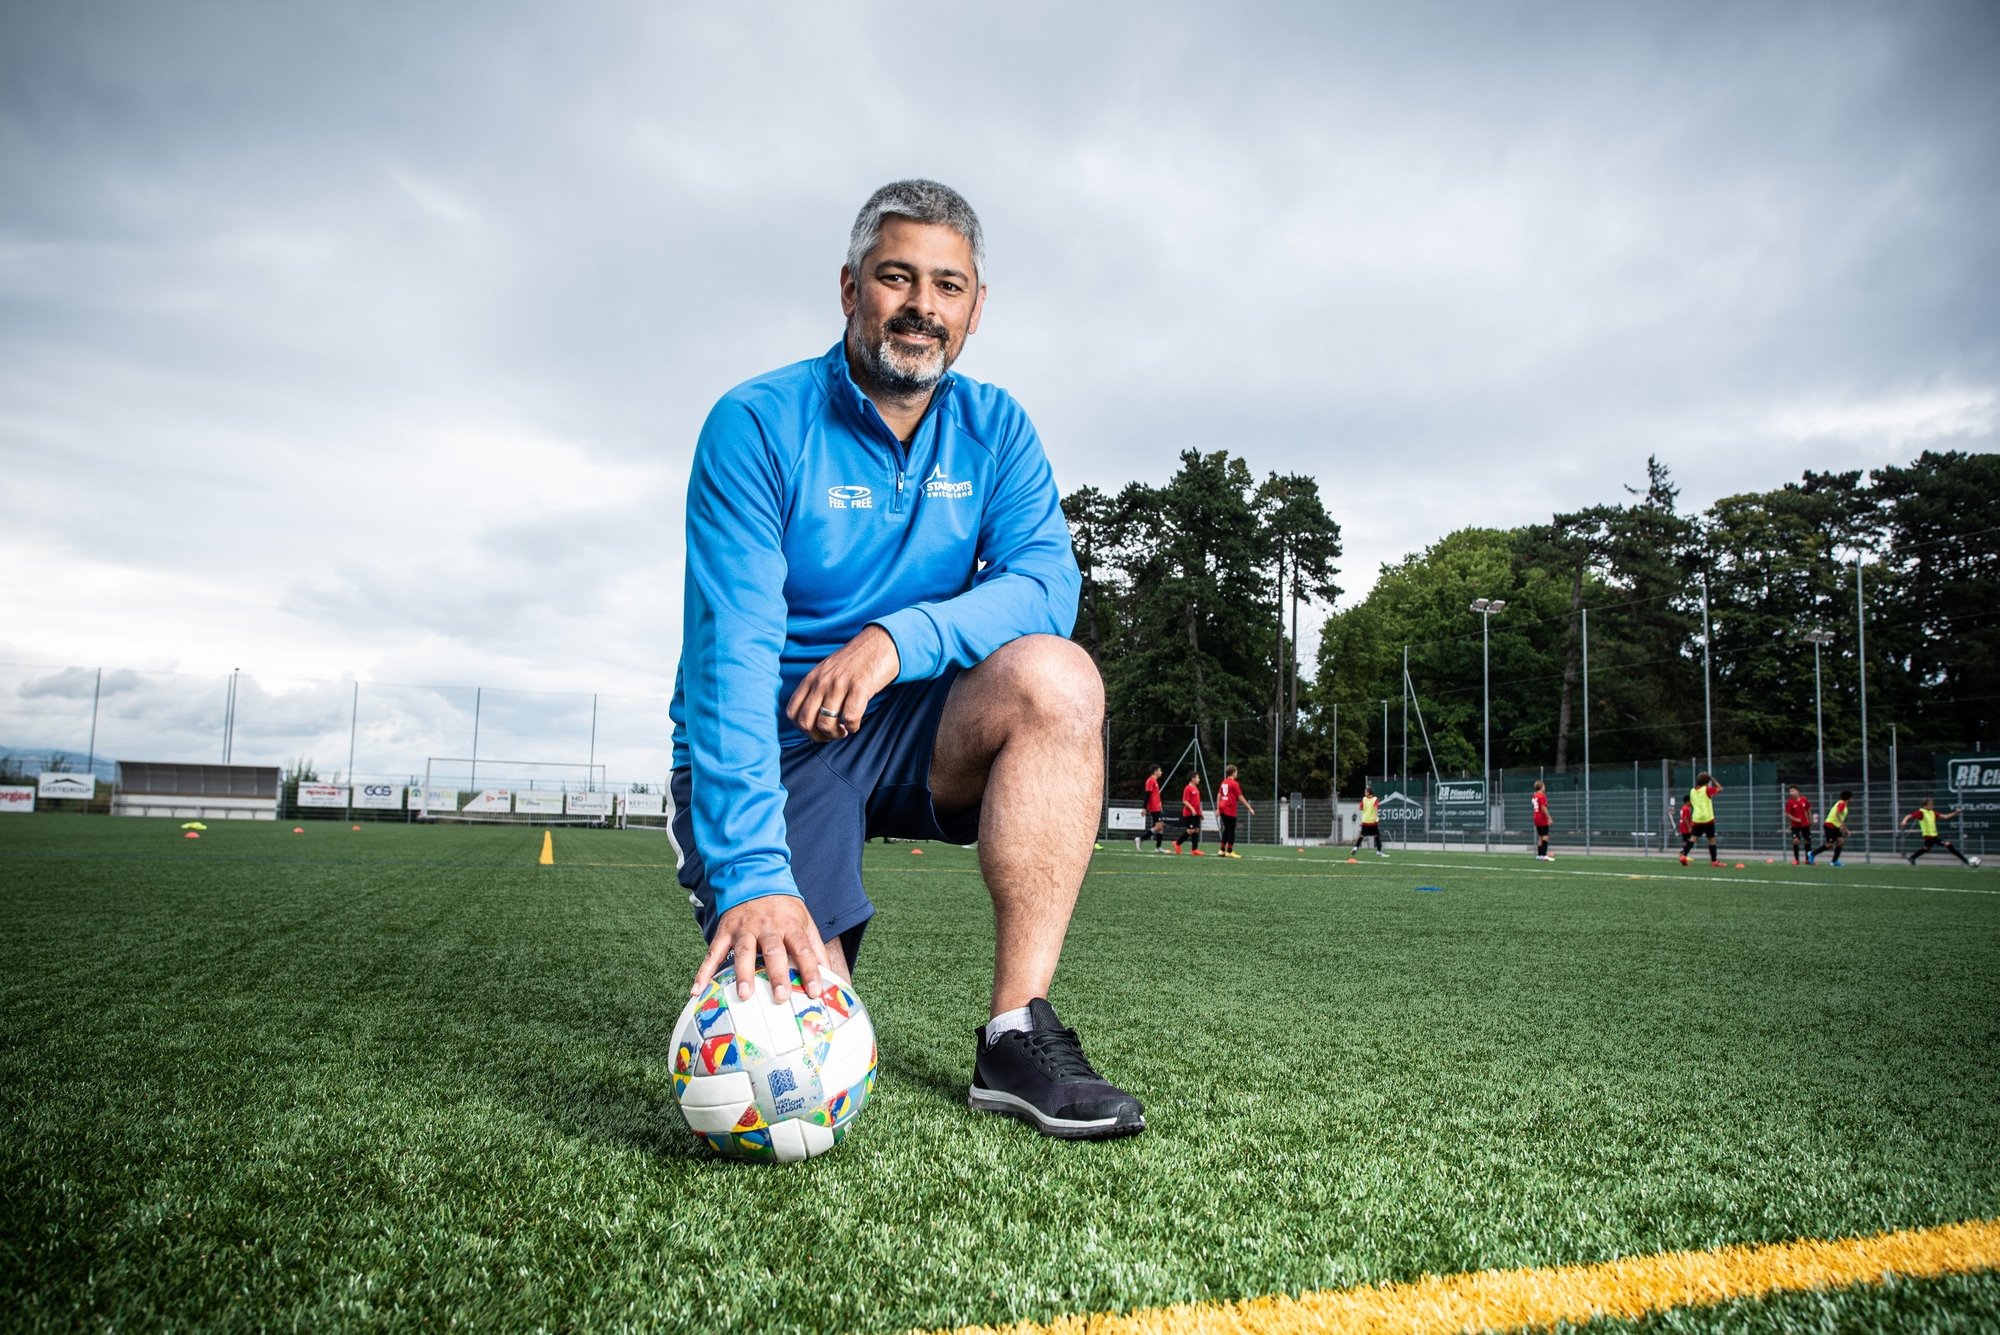 David Ashtamkar, patron de la société Star Sports, basée à Cossonay, organise des camps de foot depuis vingt ans.